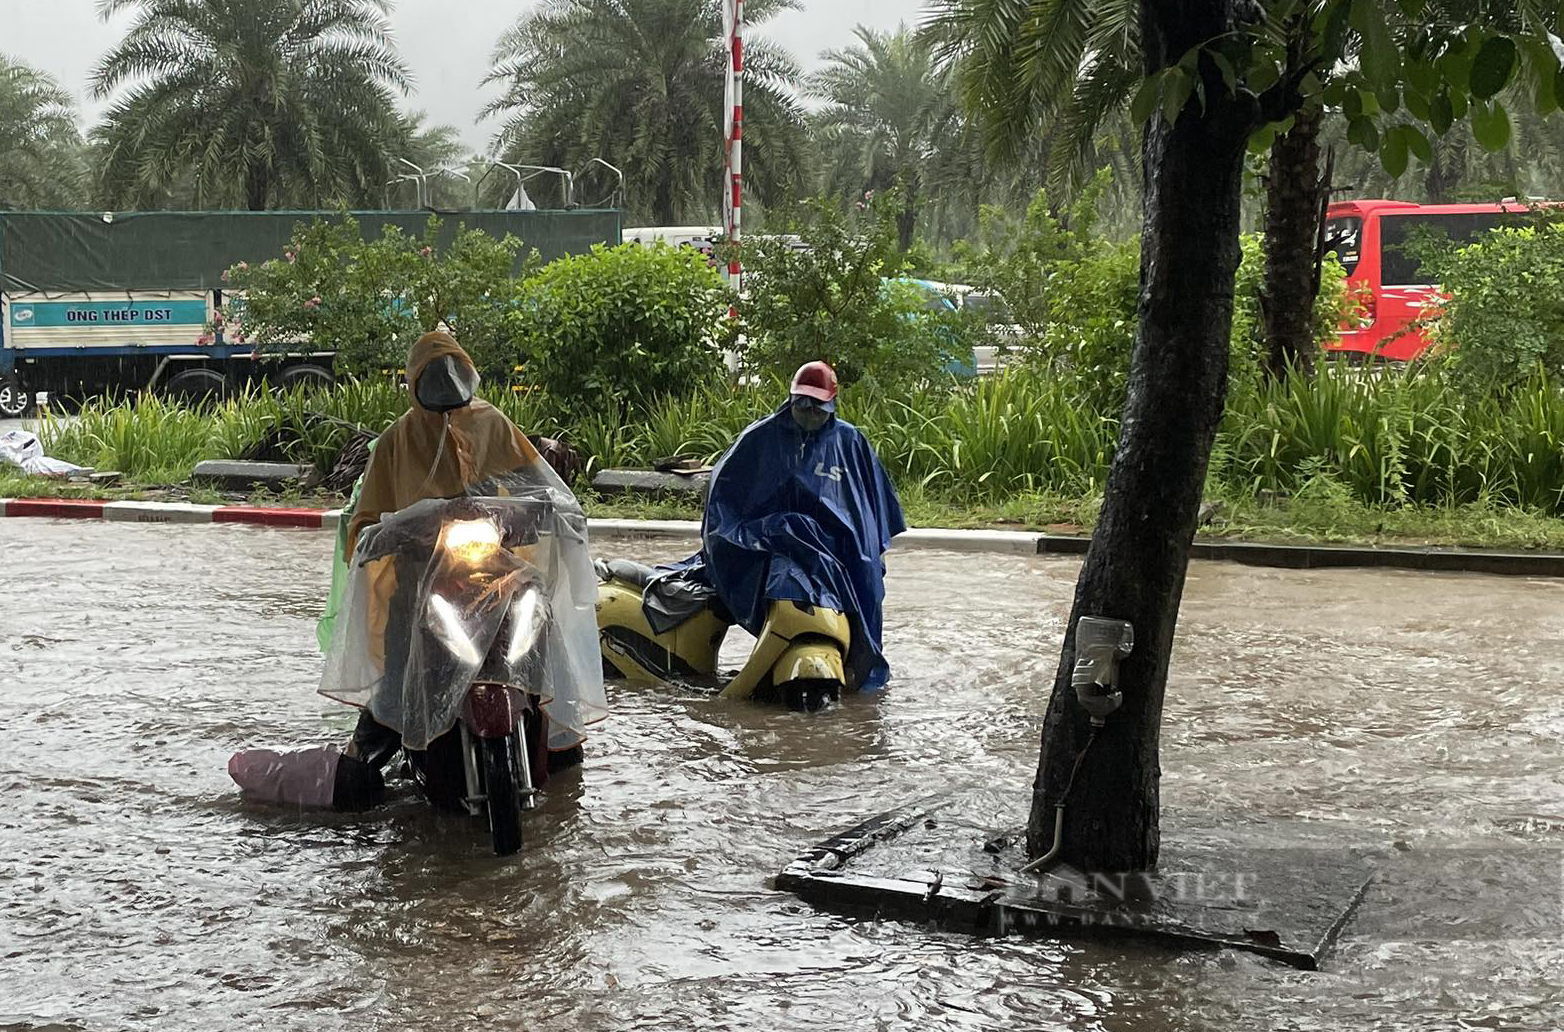 Hà Nội mưa lớn, dân công sở lũ lượt xin nghỉ làm vì xe chết máy - Ảnh 2.